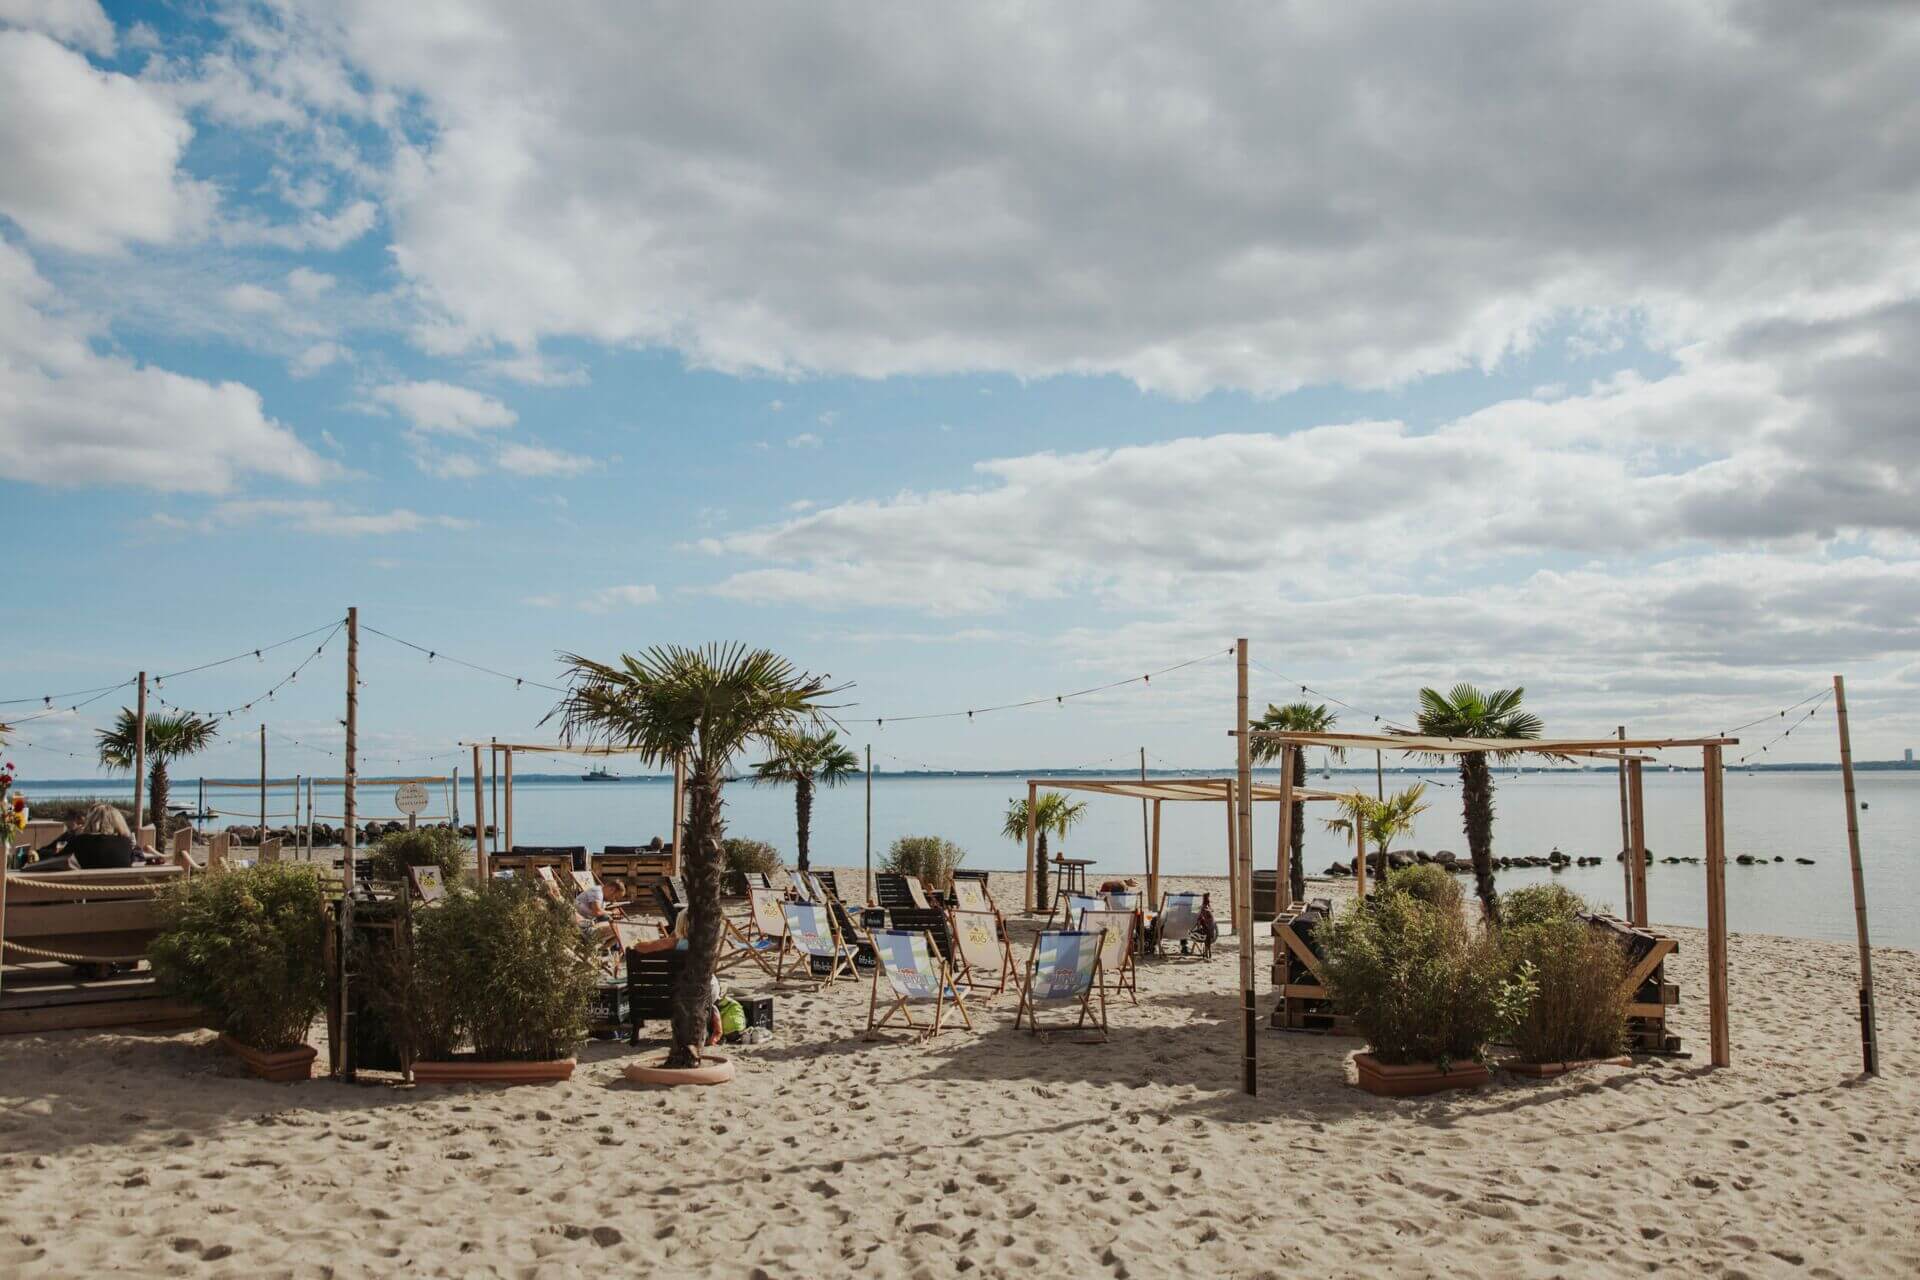 Eine Strandbar direkt am Sandstrand mit einer Reihe von Liegestühlen und rustikalen Holzmöbeln. Ein paar Palmen und große Pflanzenkübel sorgen für ein tropisches Flair. Lichterketten sind oberhalb des Bereichs gespannt, was auf eine gemütliche Atmosphäre